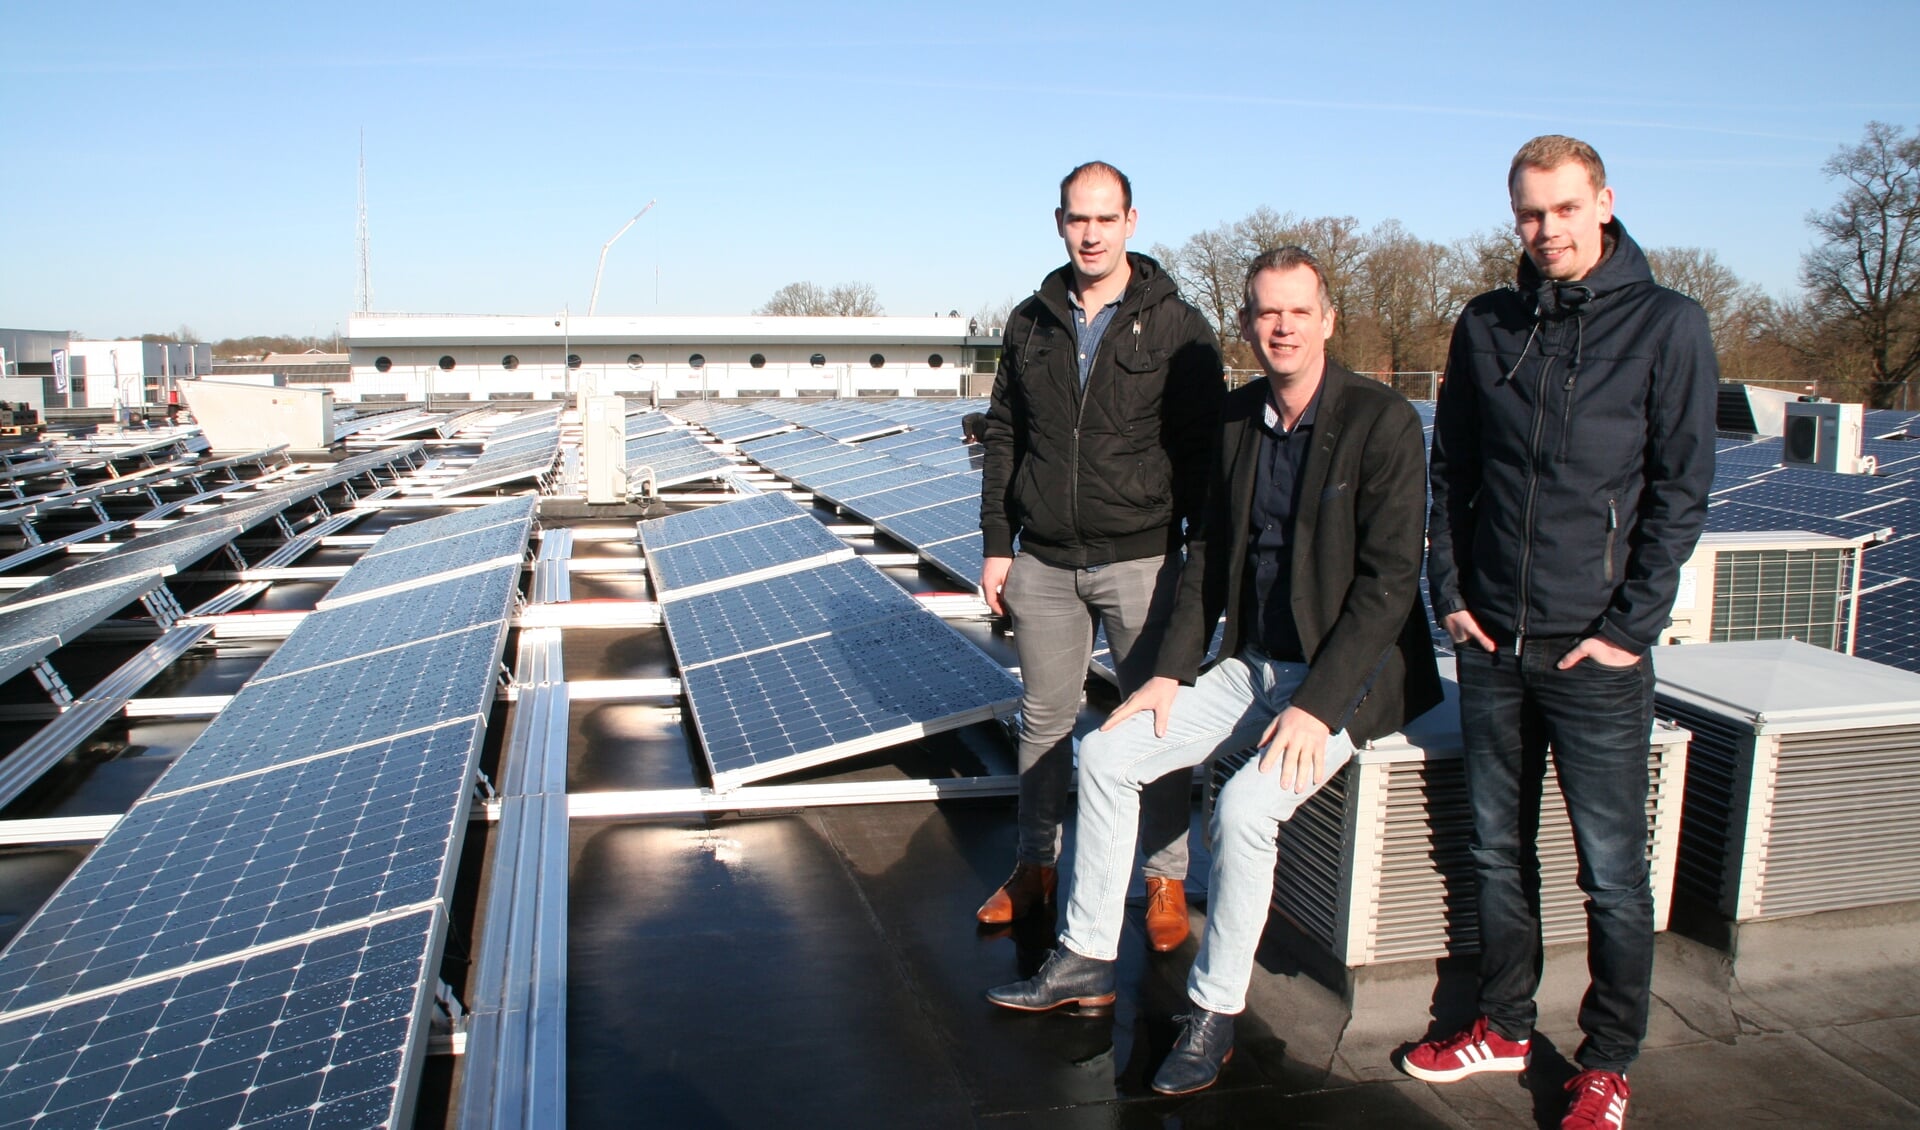 Directeur Frans Verhaegh samen met zijn zoons Joeri (links, werkvoorbereider) en Kjeld (rechts, onderhoudsmonteur) op het dak van Mevo Precision Technology. Foto: PR